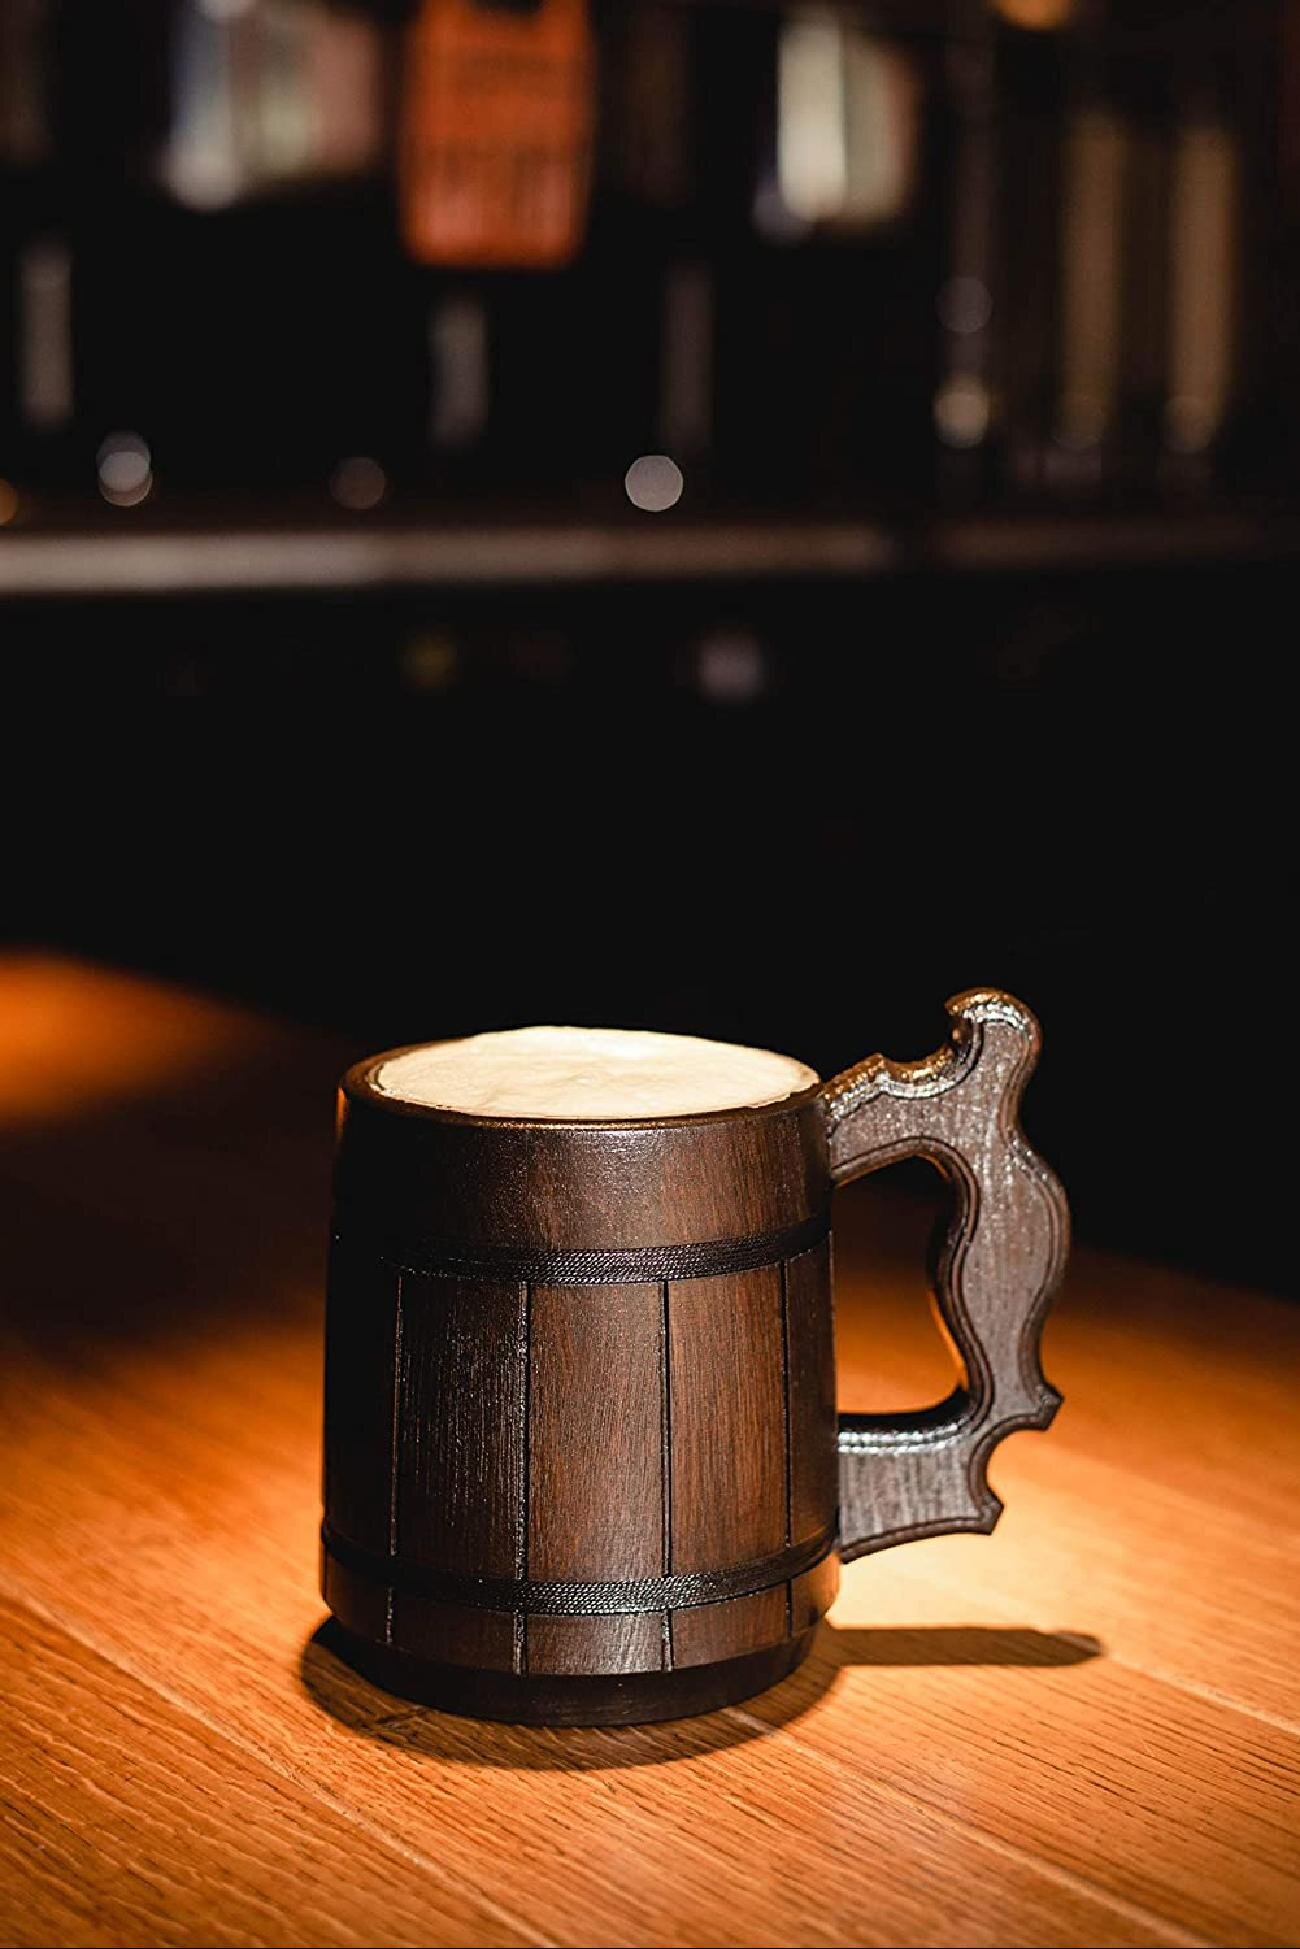 20.28oz Handmade Beer Mug Made of Wood Tankard Wooden Stein Beer Tankard Stein Crafted Beer Mug Cup Capacity 600ml 